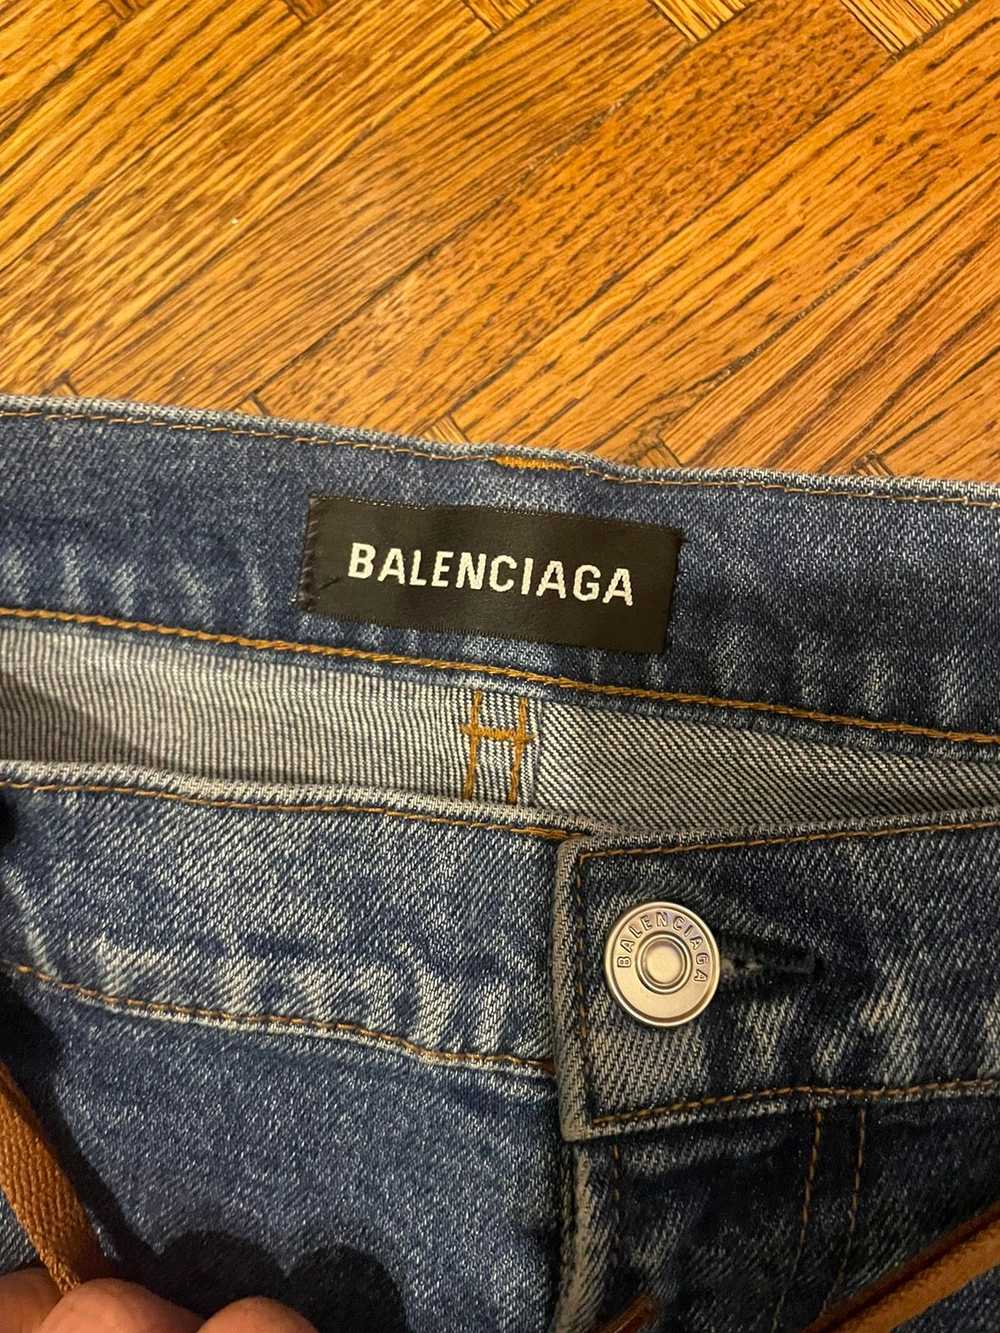 Balenciaga Balenciaga blue jeans - image 2